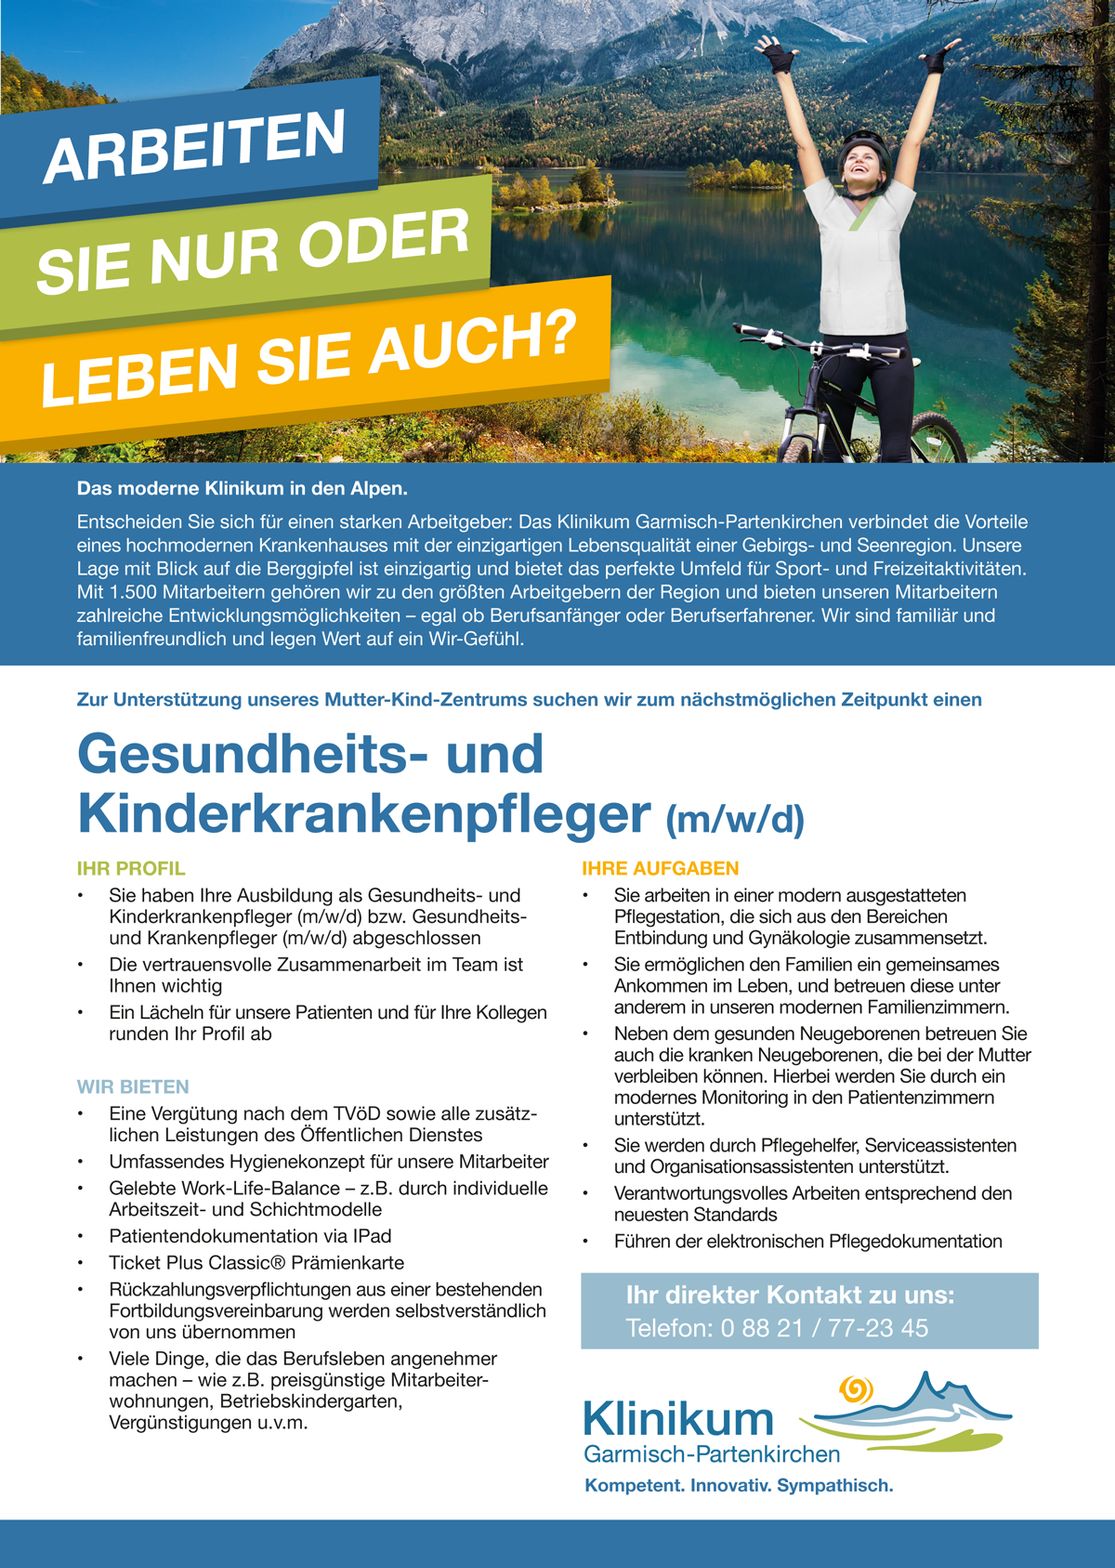 Sie suchen ein Stellenangebot für Kinderkrankenschwester? Schauen Sie auf den Stellenmarkt für Kinderkrankenschwester von Max Schmidt-Römhild GmbH & Co. KG!